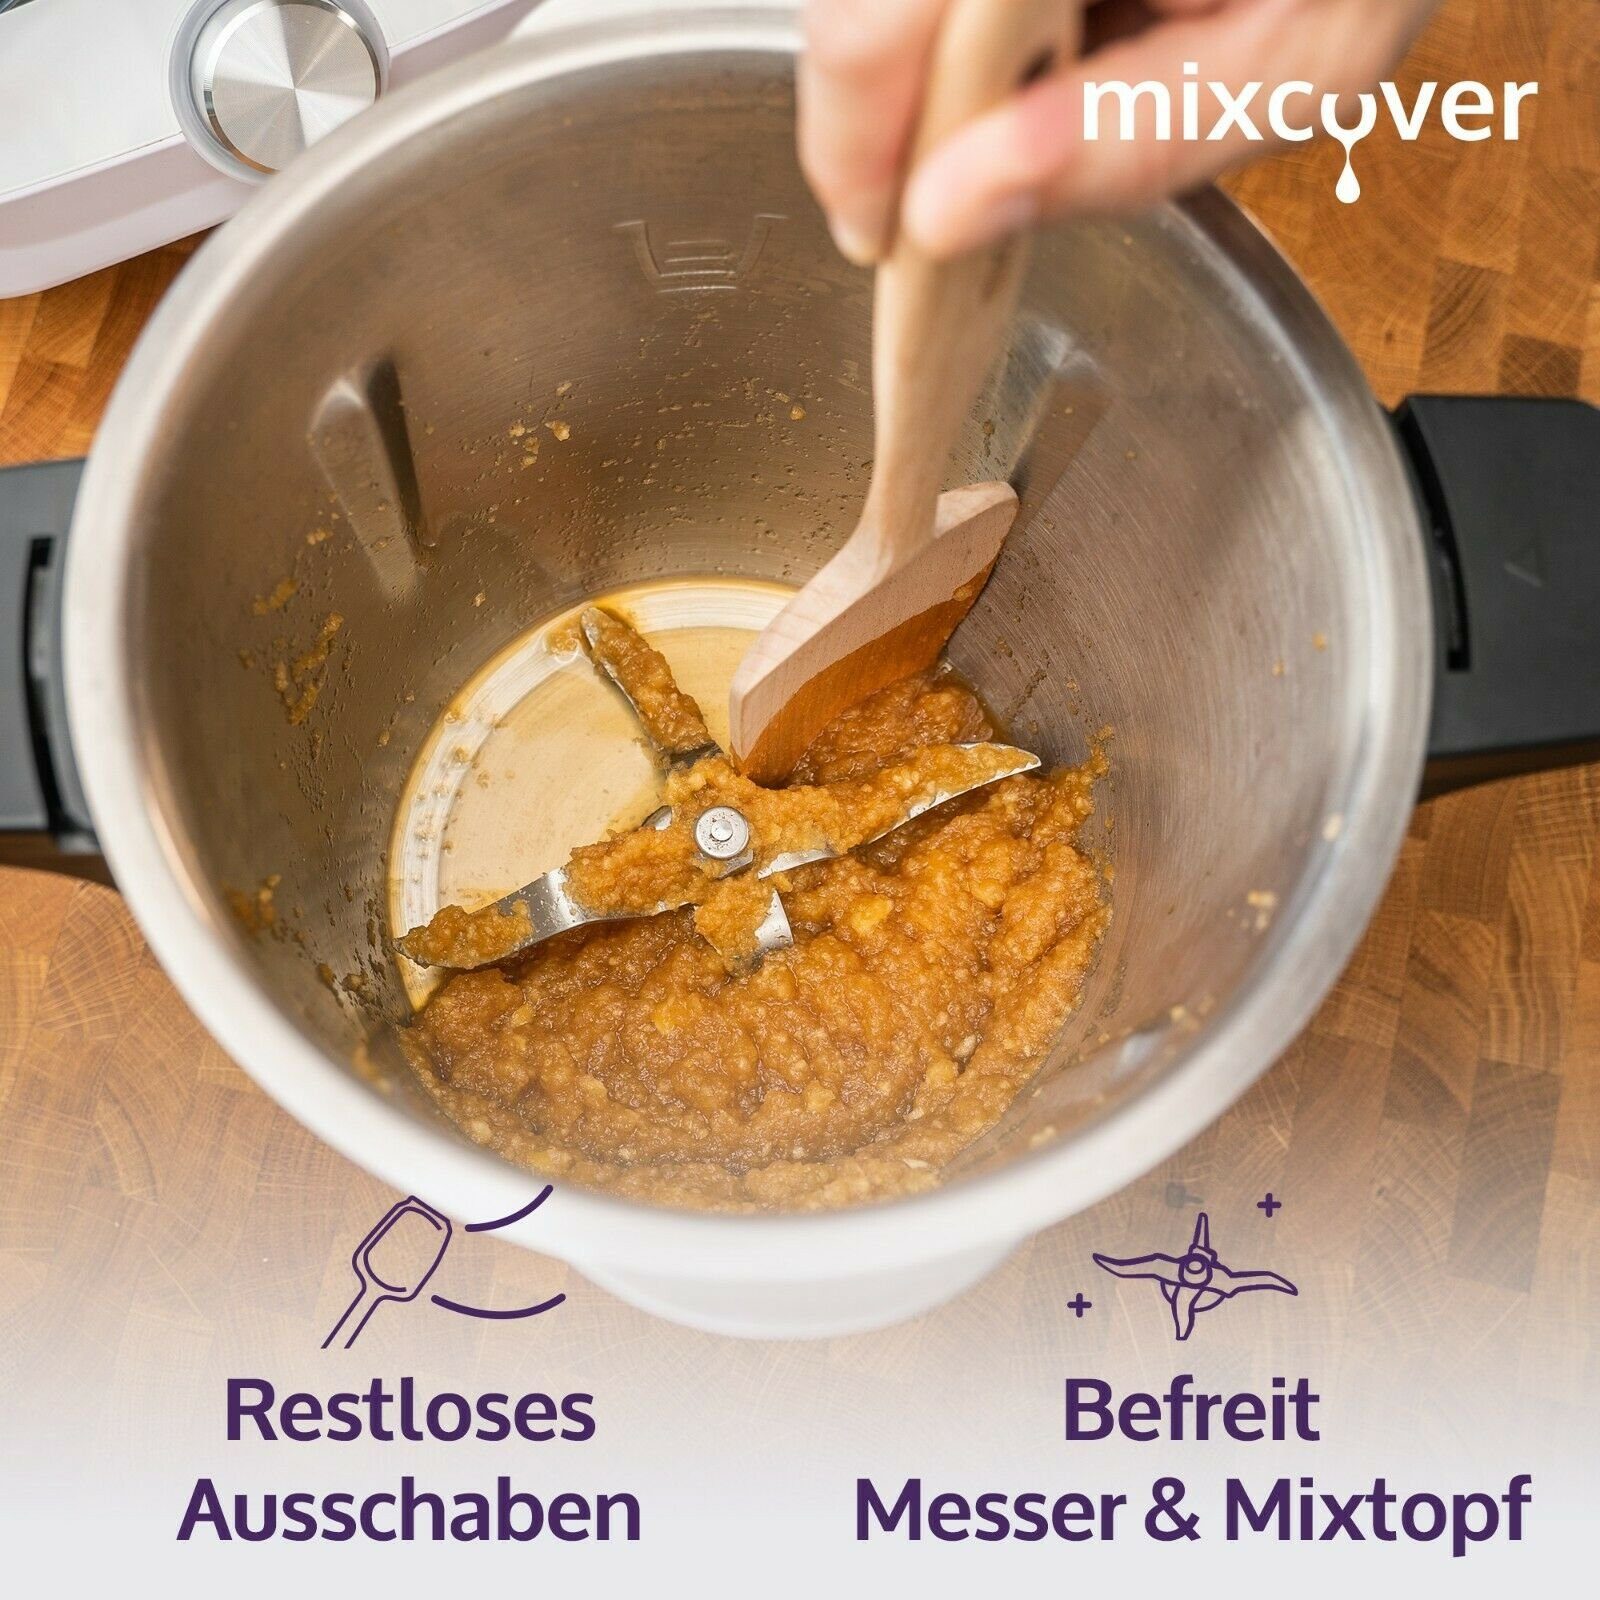 Smart Küchenmaschinen-Adapter & Nachhaltiger Mixcover Monsieur mixcover Zubehör Connect Holzspatel Cuisine